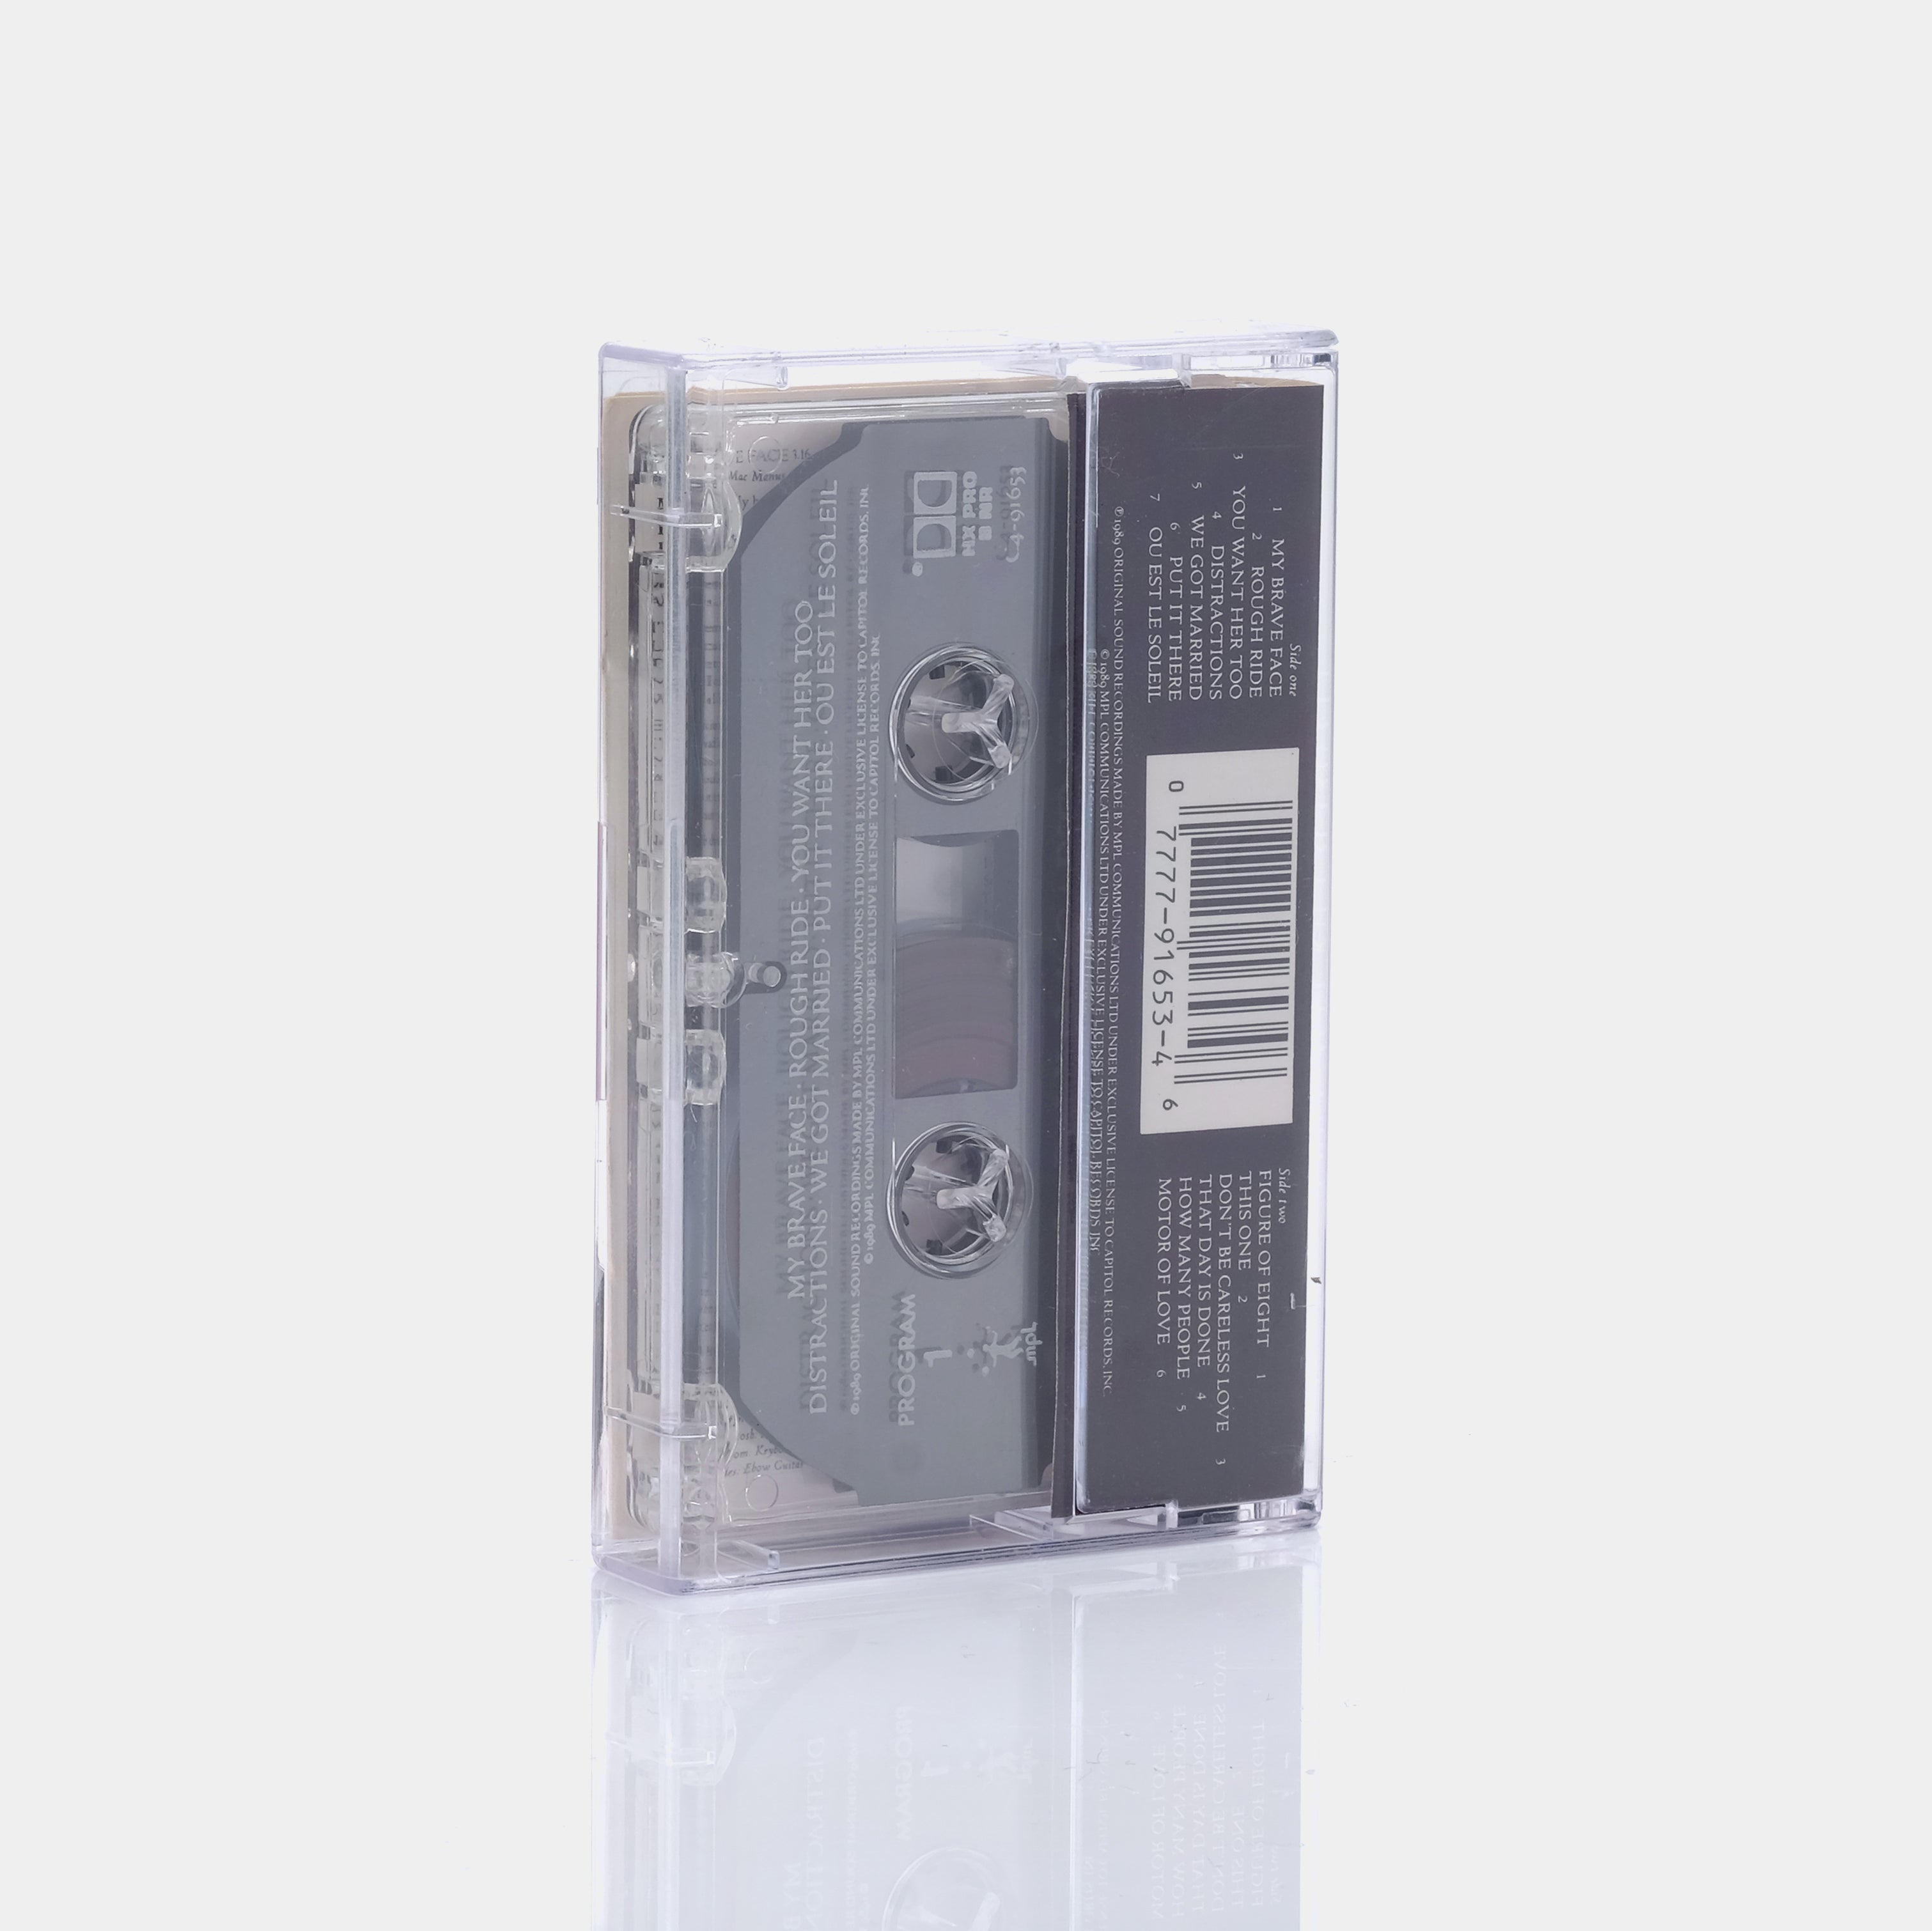 Paul McCartney - Flowers In The Dirt Cassette Tape